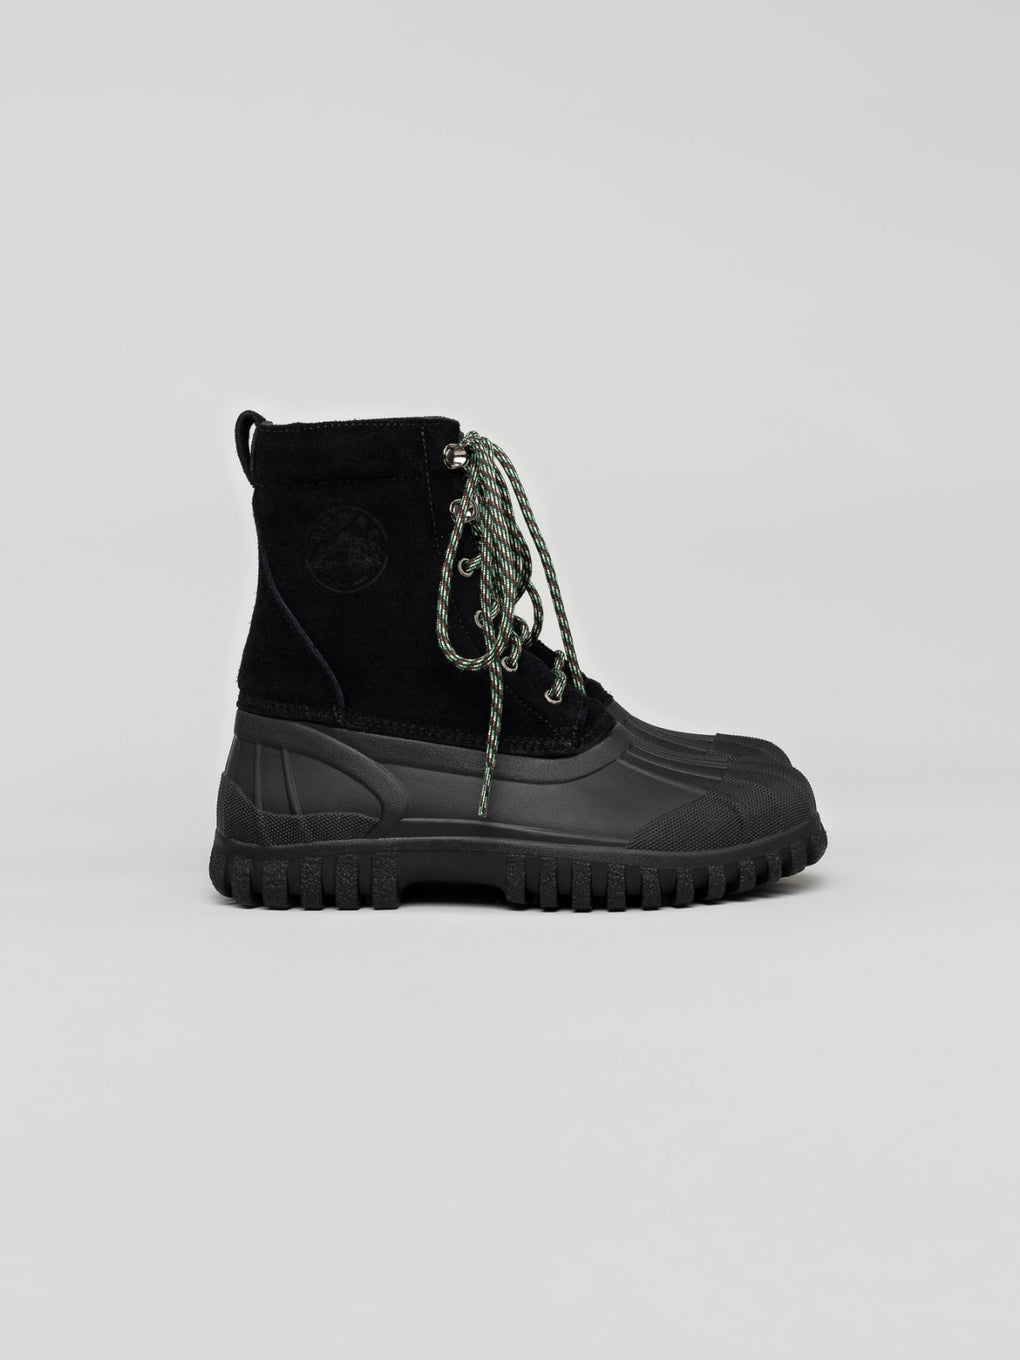 Diemme-Diemme Anatra Boot-black winter boot-suede winter boot-Diemme suede boots-Diemme black boots-Idun-St. Paul